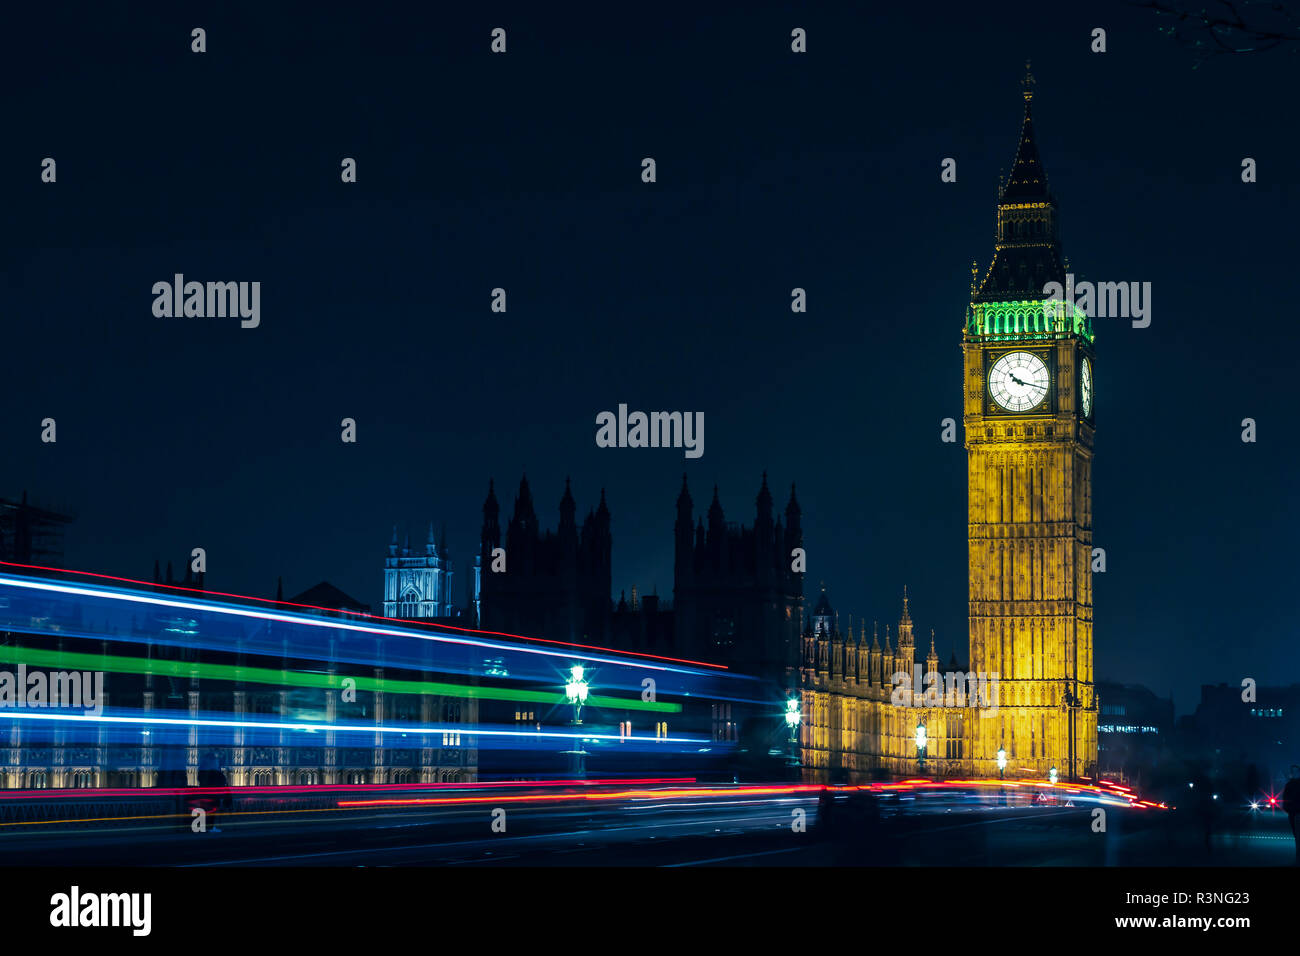 Die kultigen Britischen Elizabeth Tower mit Big Ben an der Oberseite und seine Uhr Gesicht, in der Nähe der Houses of Parliament in Westminster, London im Ger Stockfoto